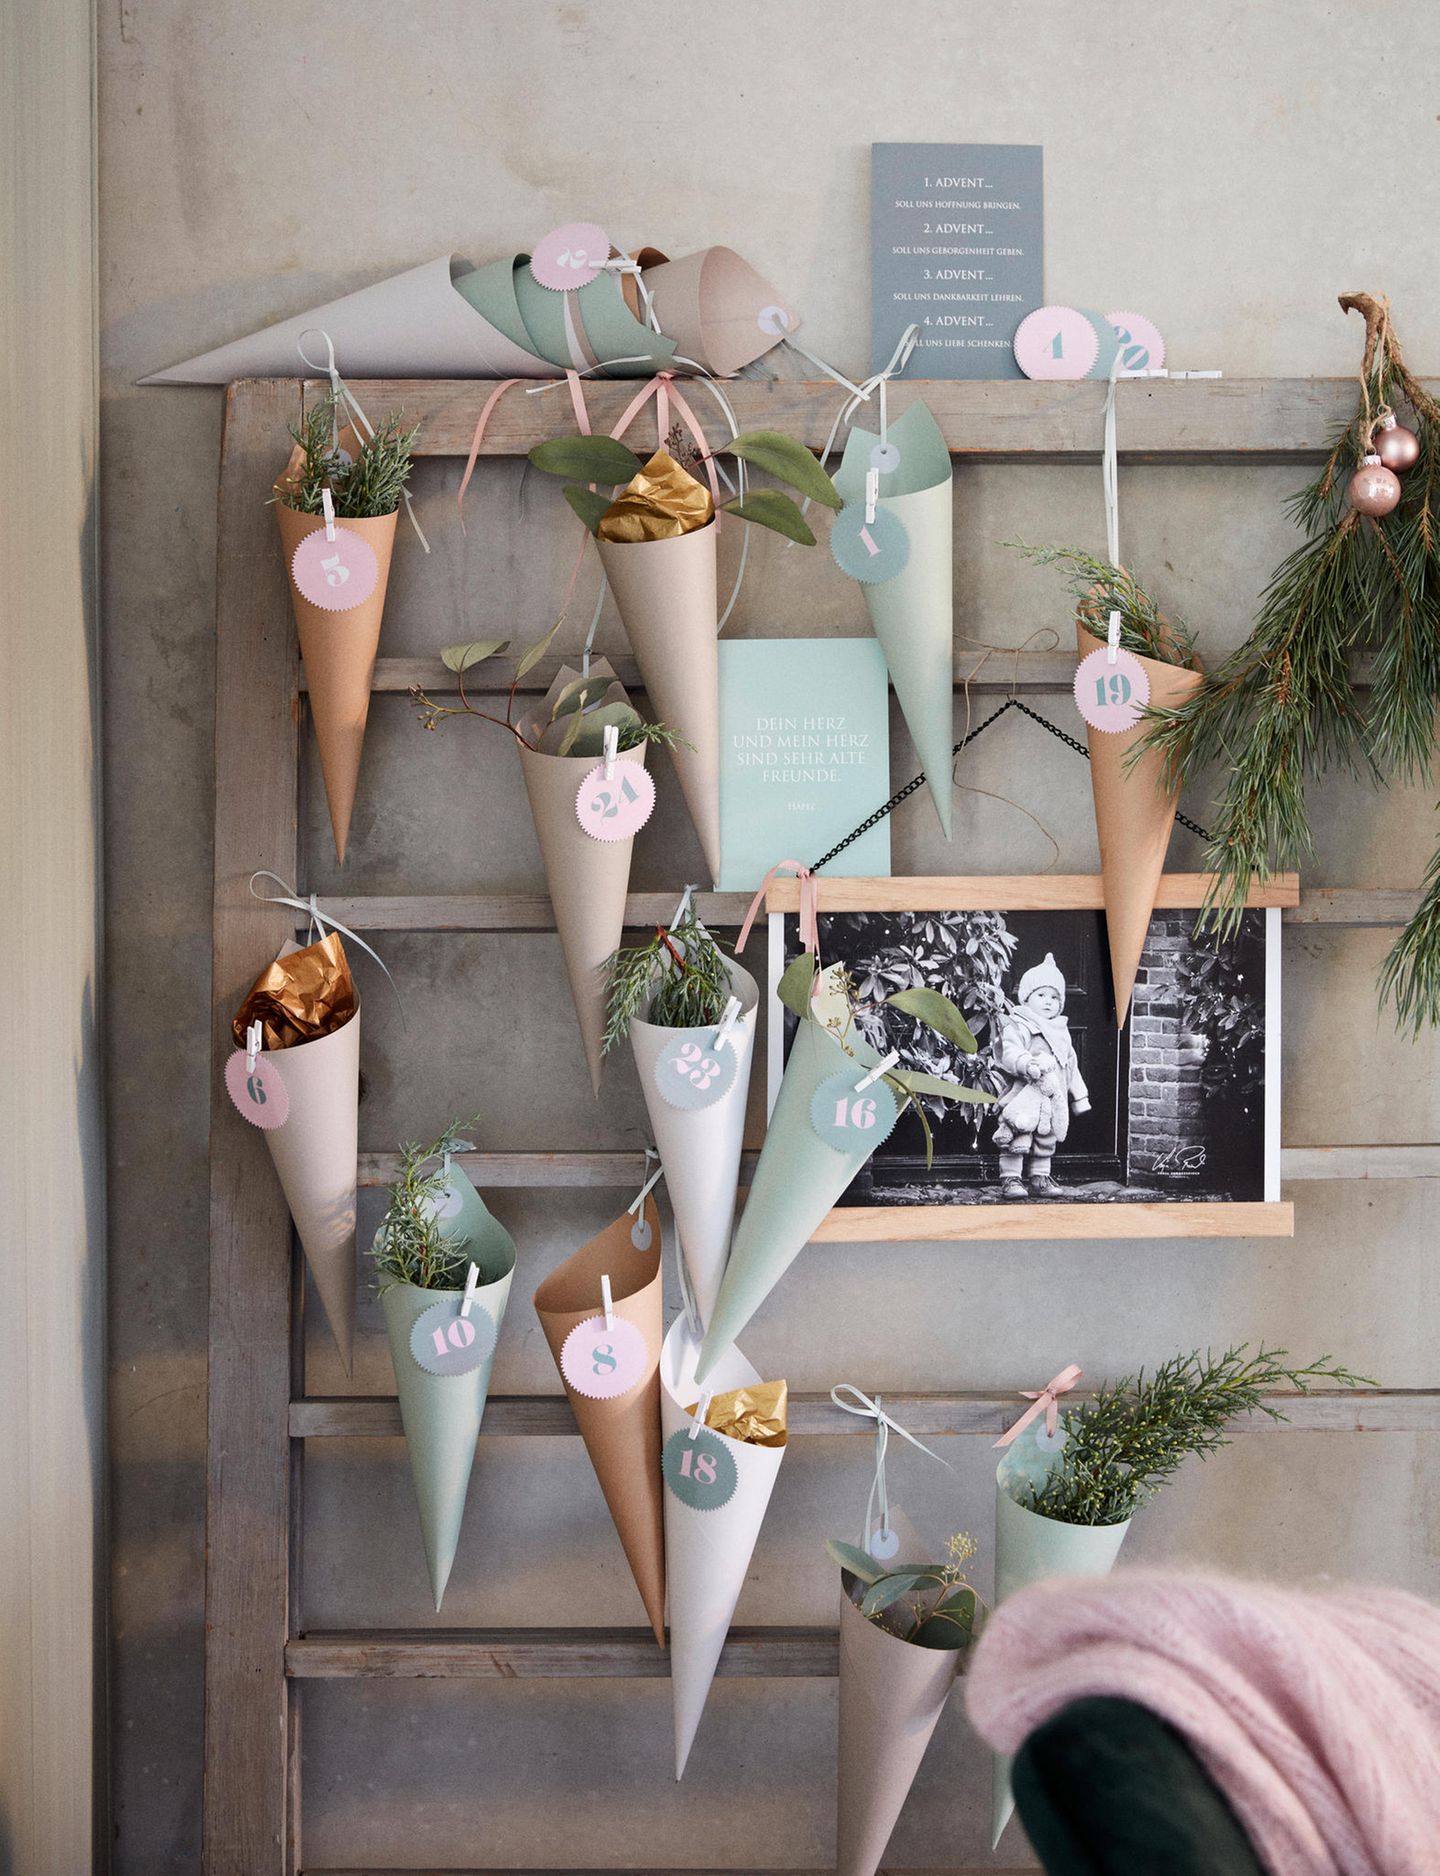 Adventskalender aus Tütchen in Pastelltönen hängen an einem Regal